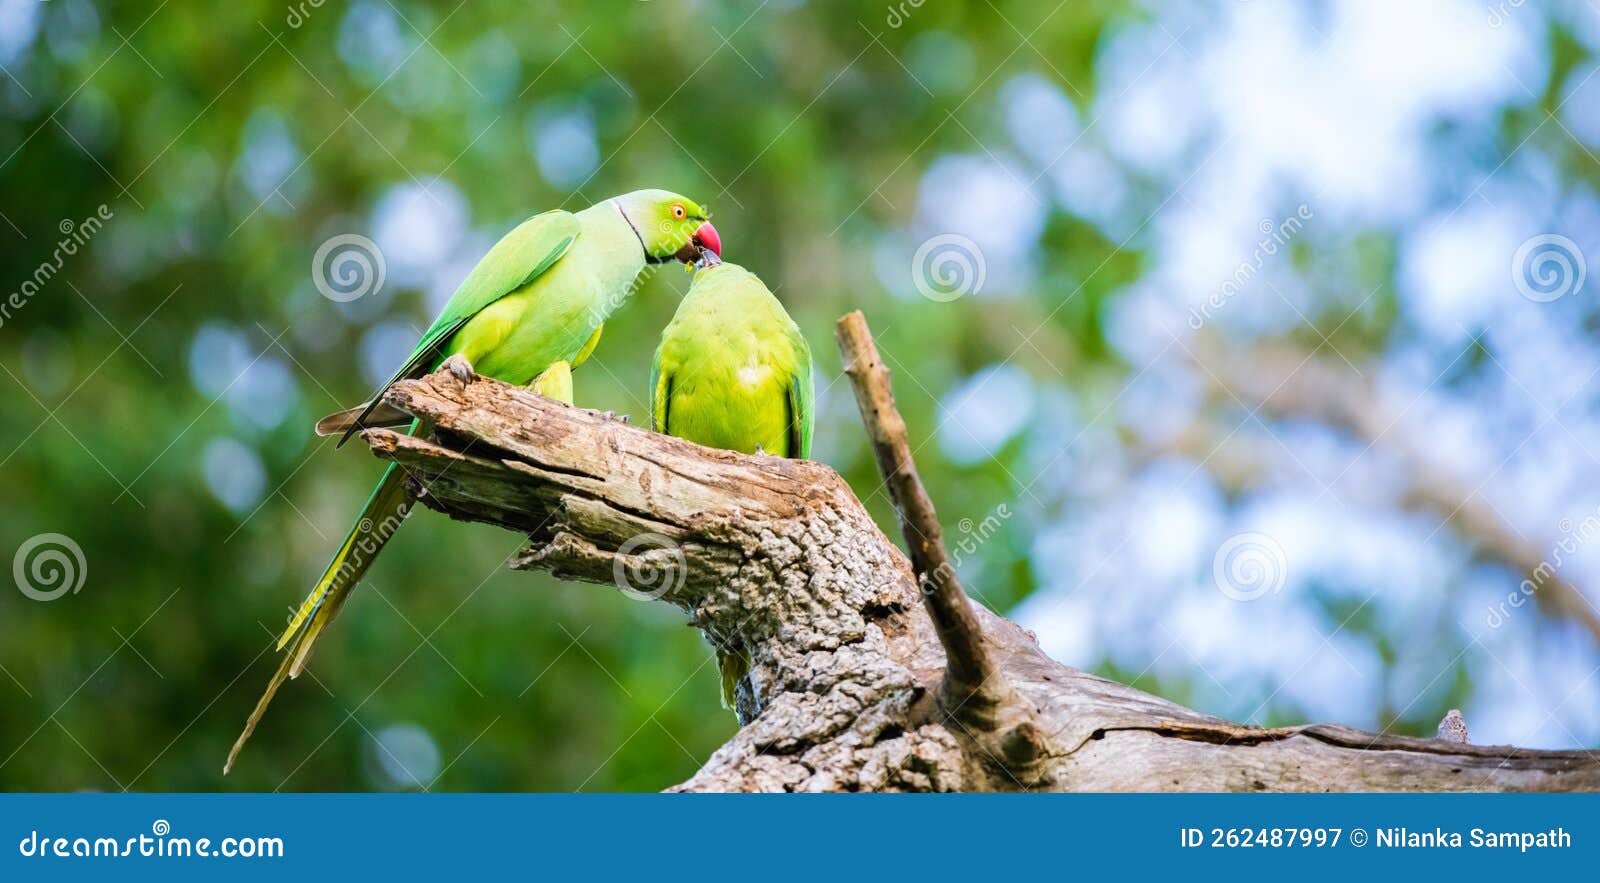 Rose-ringed Parakeet : r/wildlifephotography